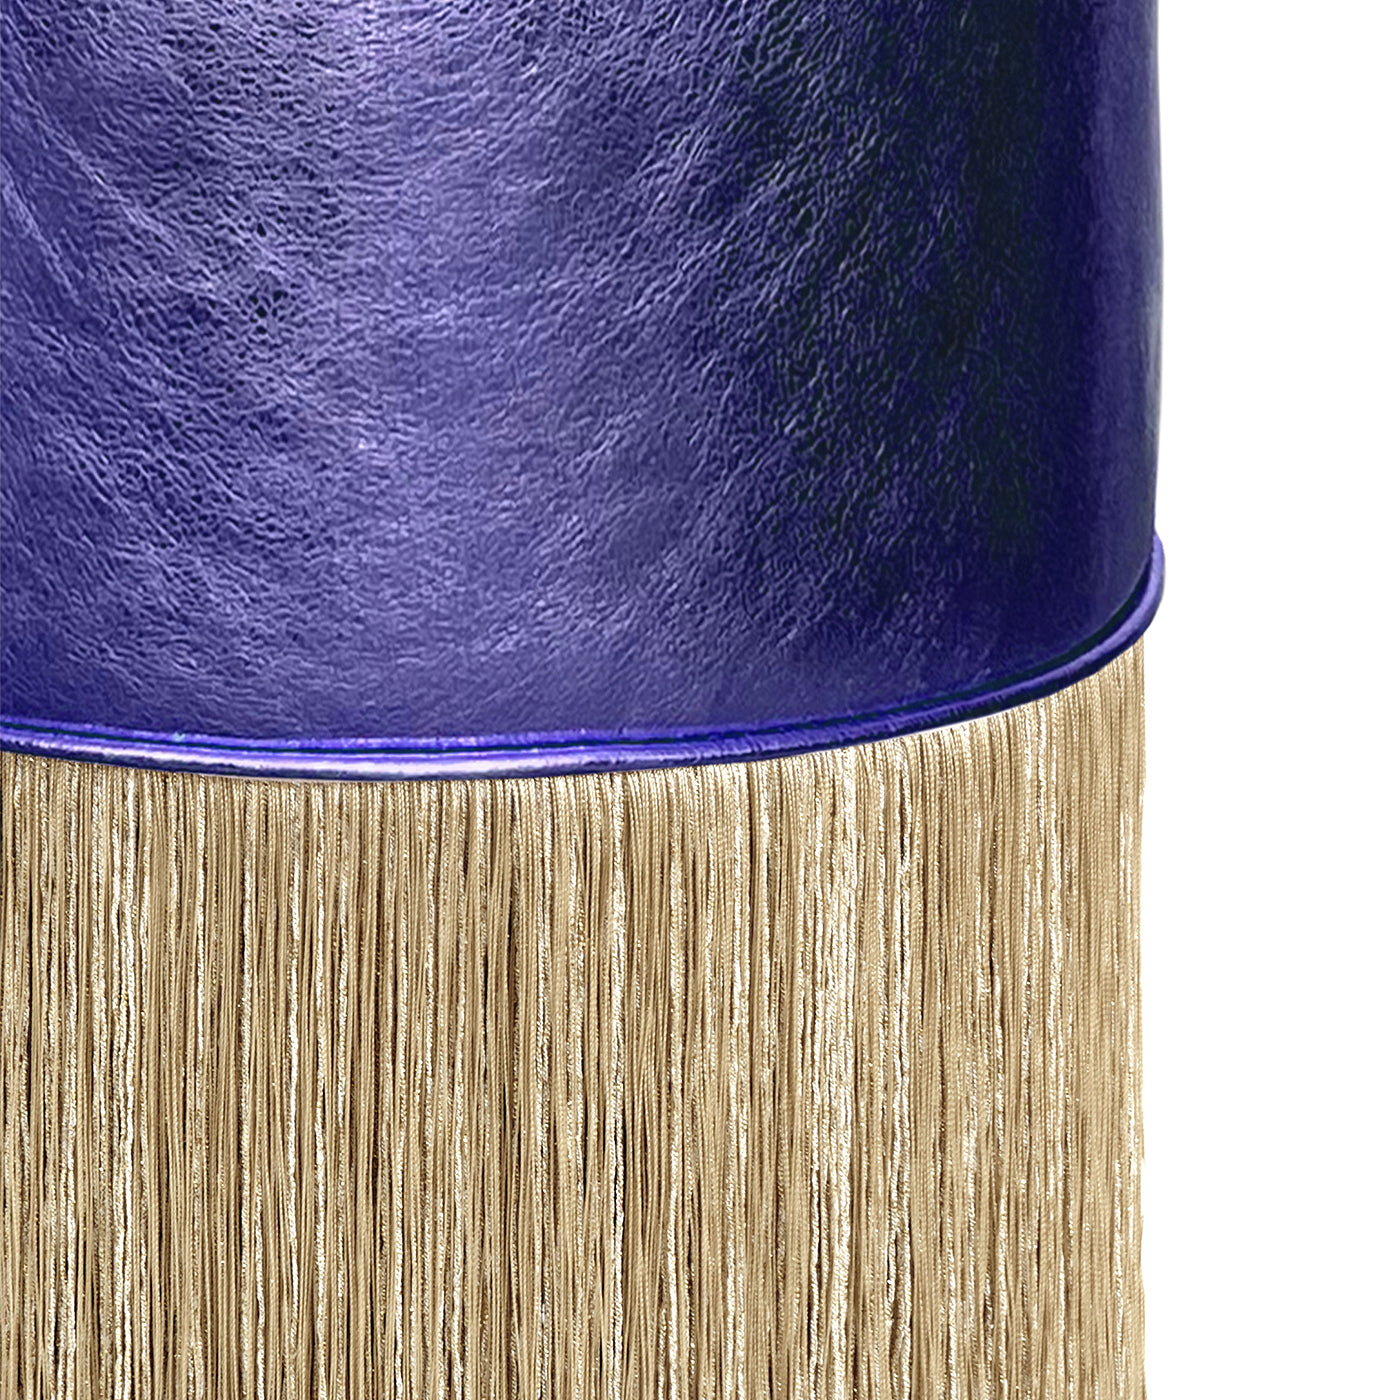 Pouf en cuir violet brillant à franges dorées par Lorenza Bozzoli - Vue alternative 1